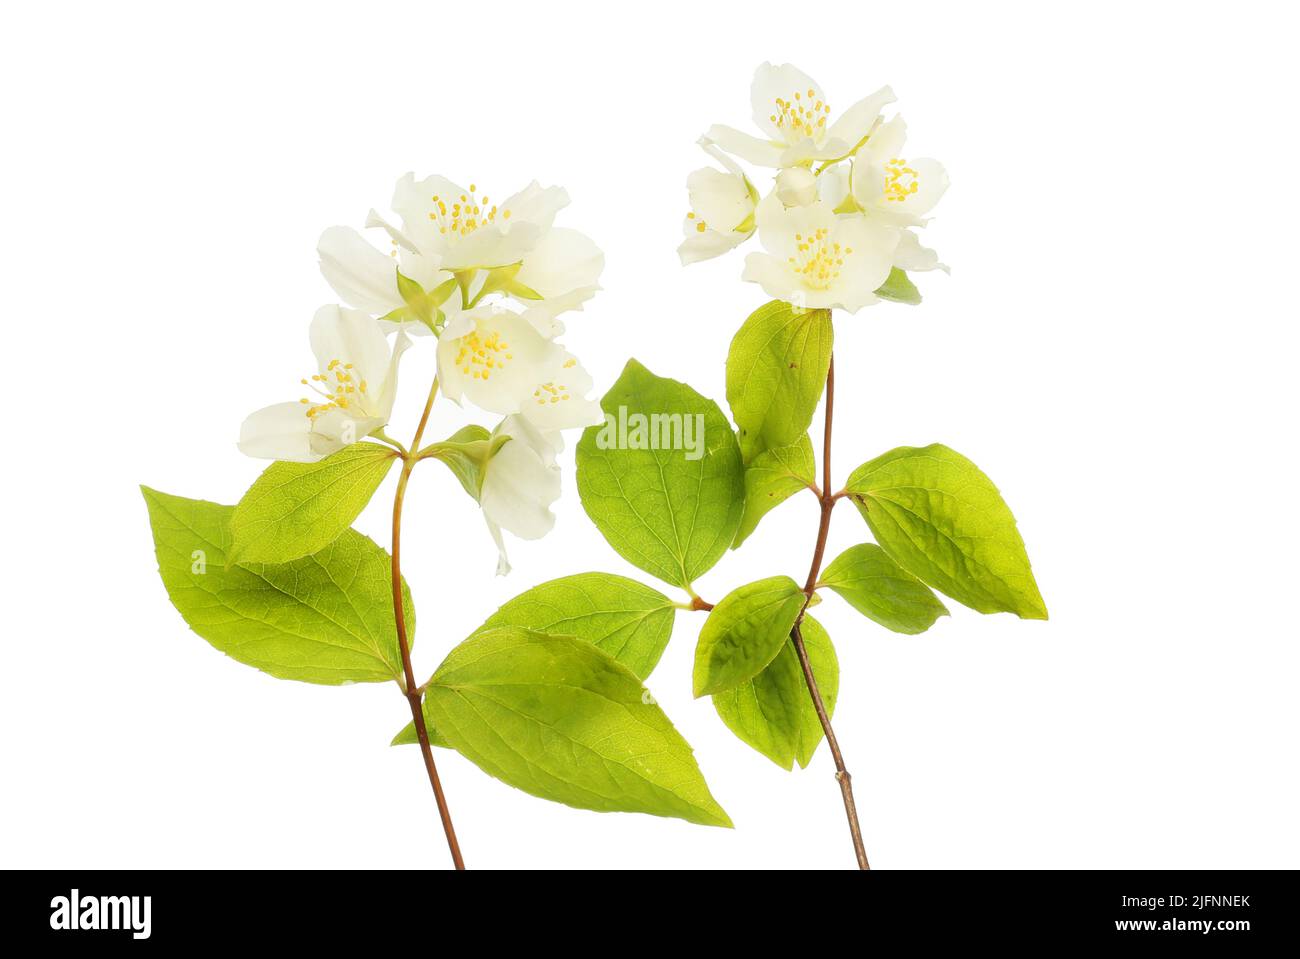 Philadelphus fleurs et feuillage isolés contre white Banque D'Images